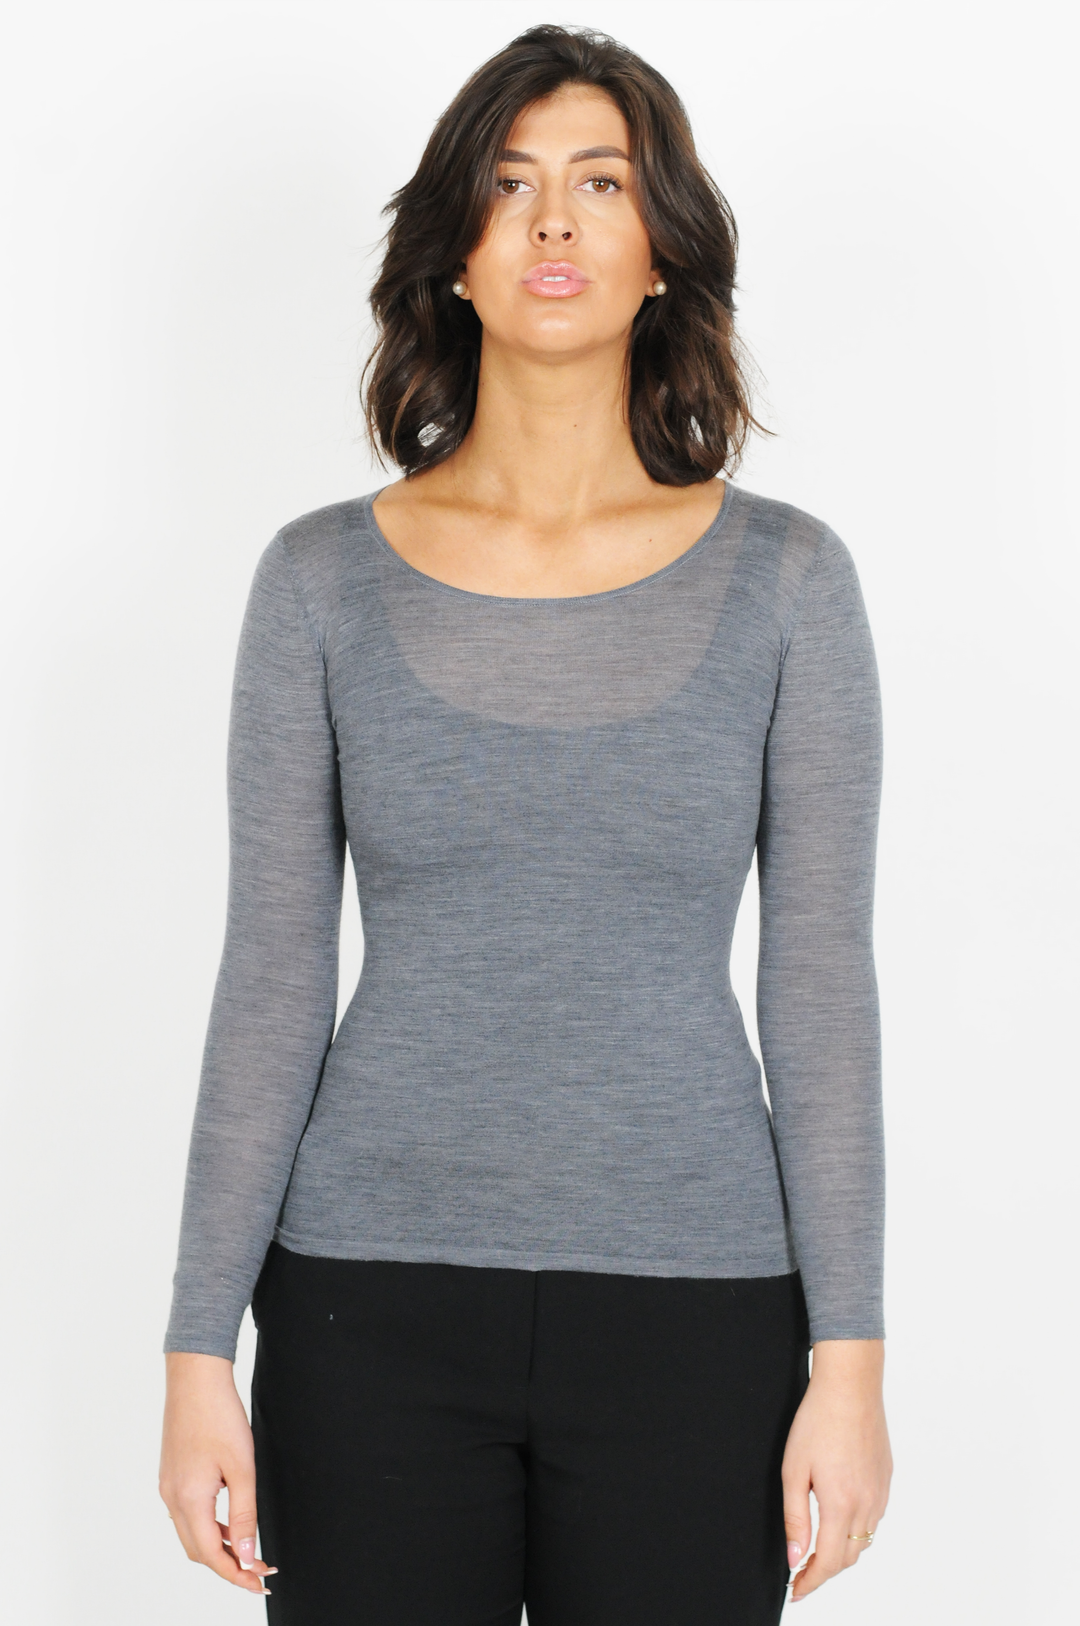 SY-23007 Shirt - 100% Wool - Women - Dark Grey